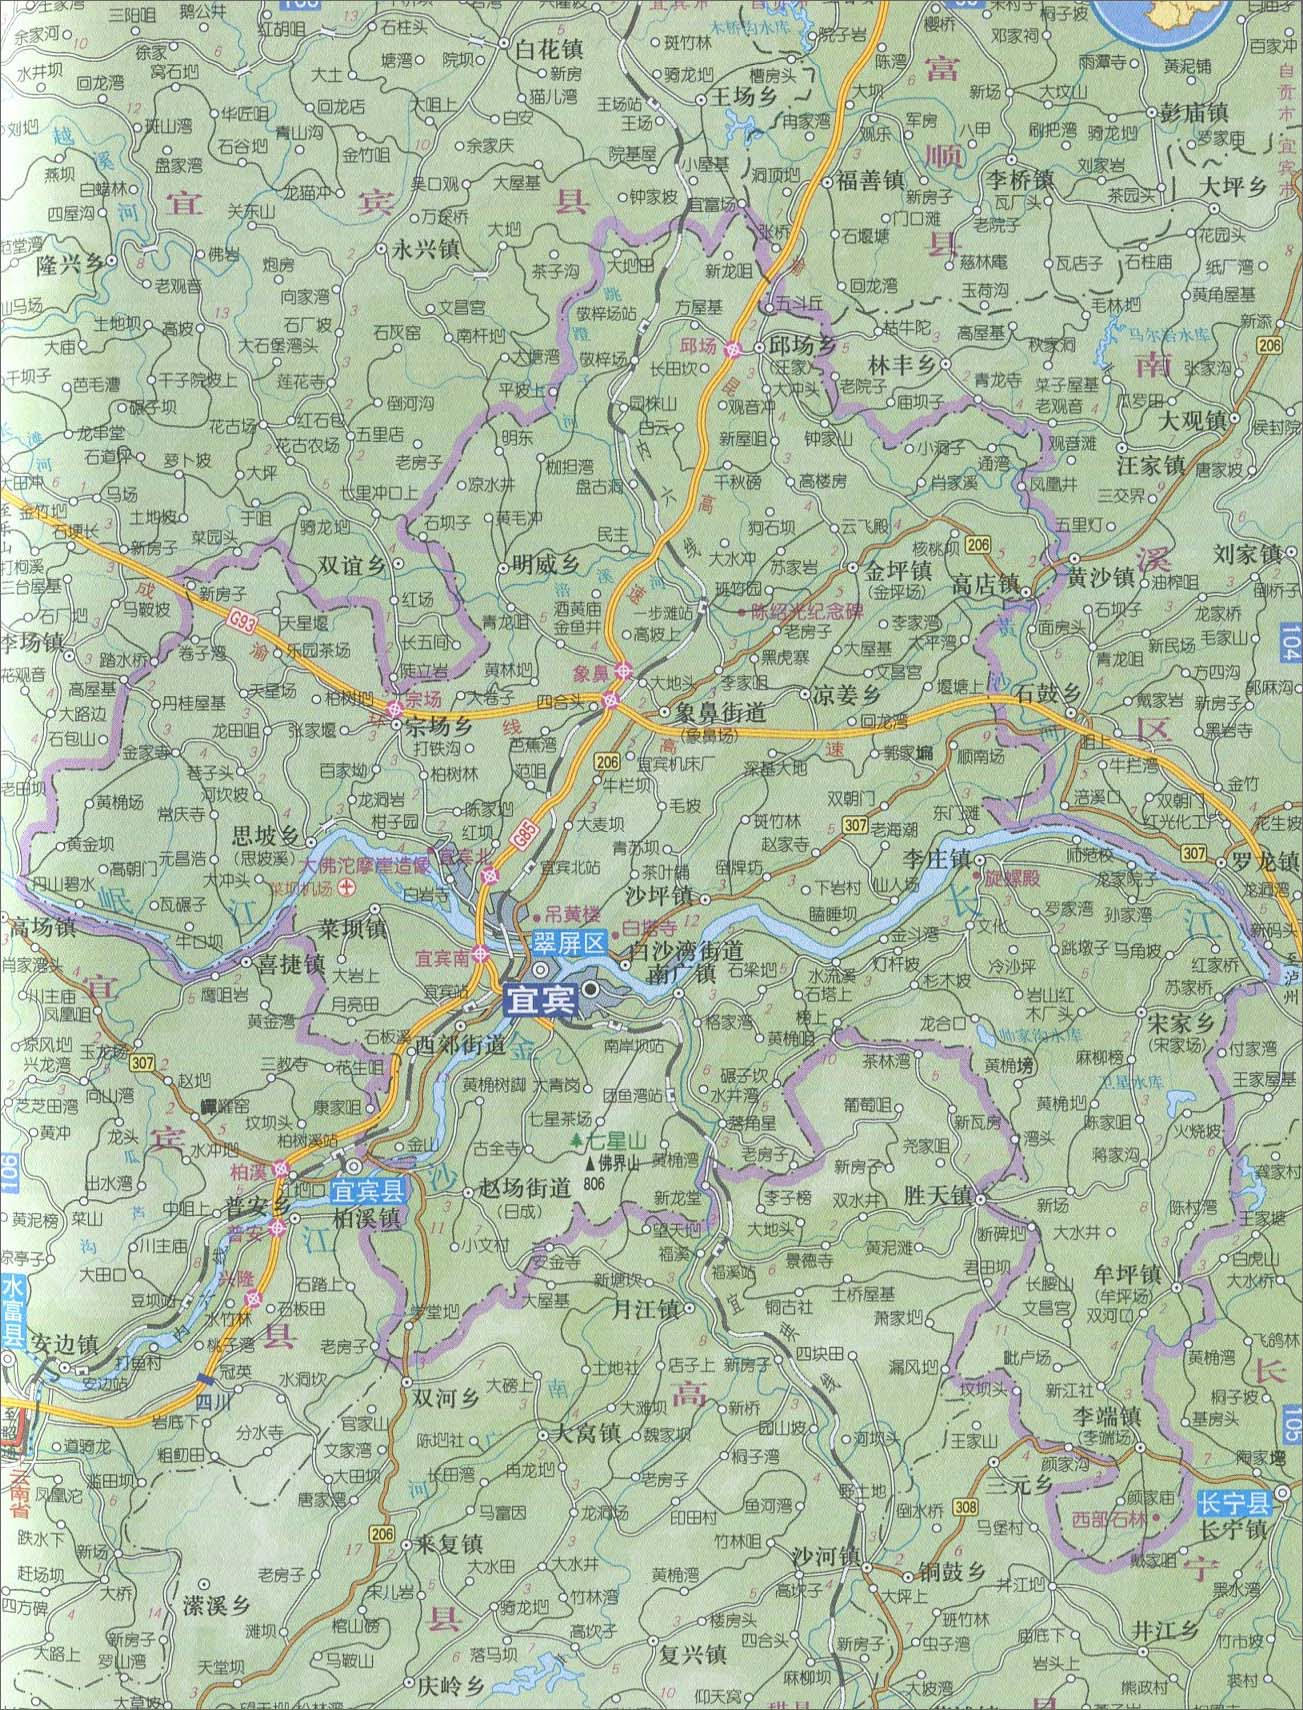 上一幅地图: 宜宾市交通地图 | 宜宾市 | 下一幅地图: 筠连县地图_珙图片